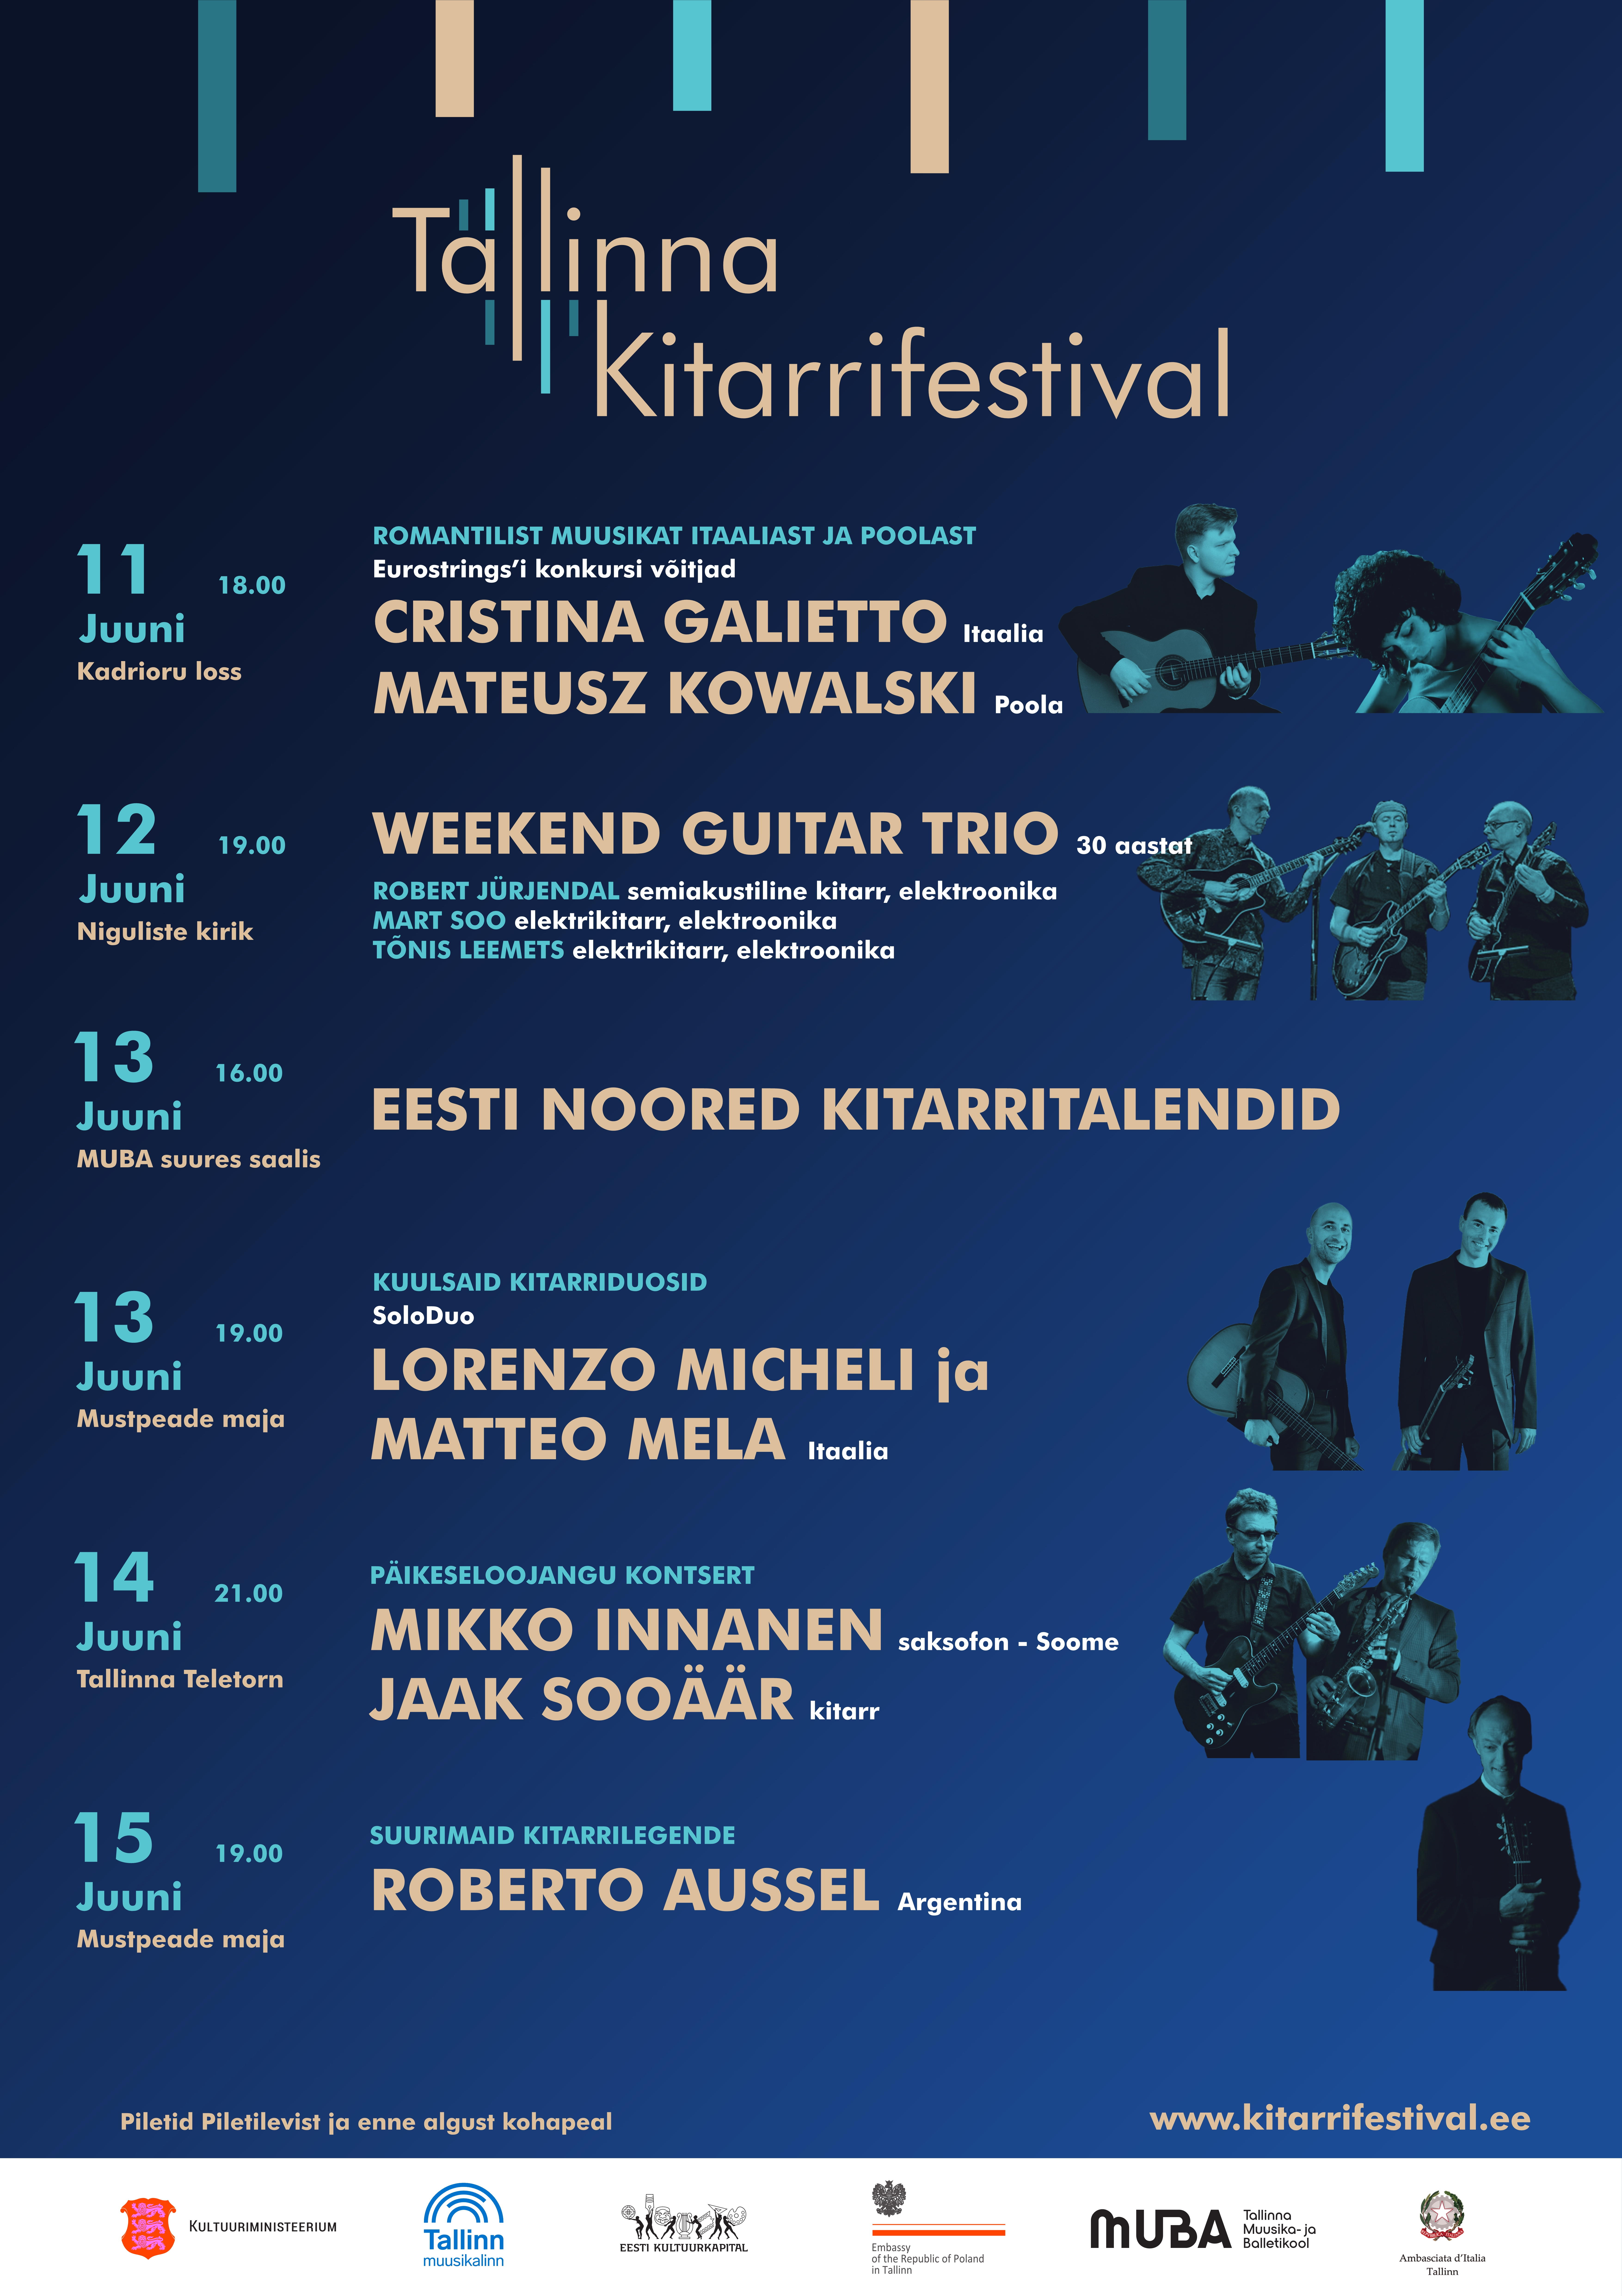 Lorenzo Micheli ja Matteo Mela (Itaalia) / Tallinna kitarrifestival